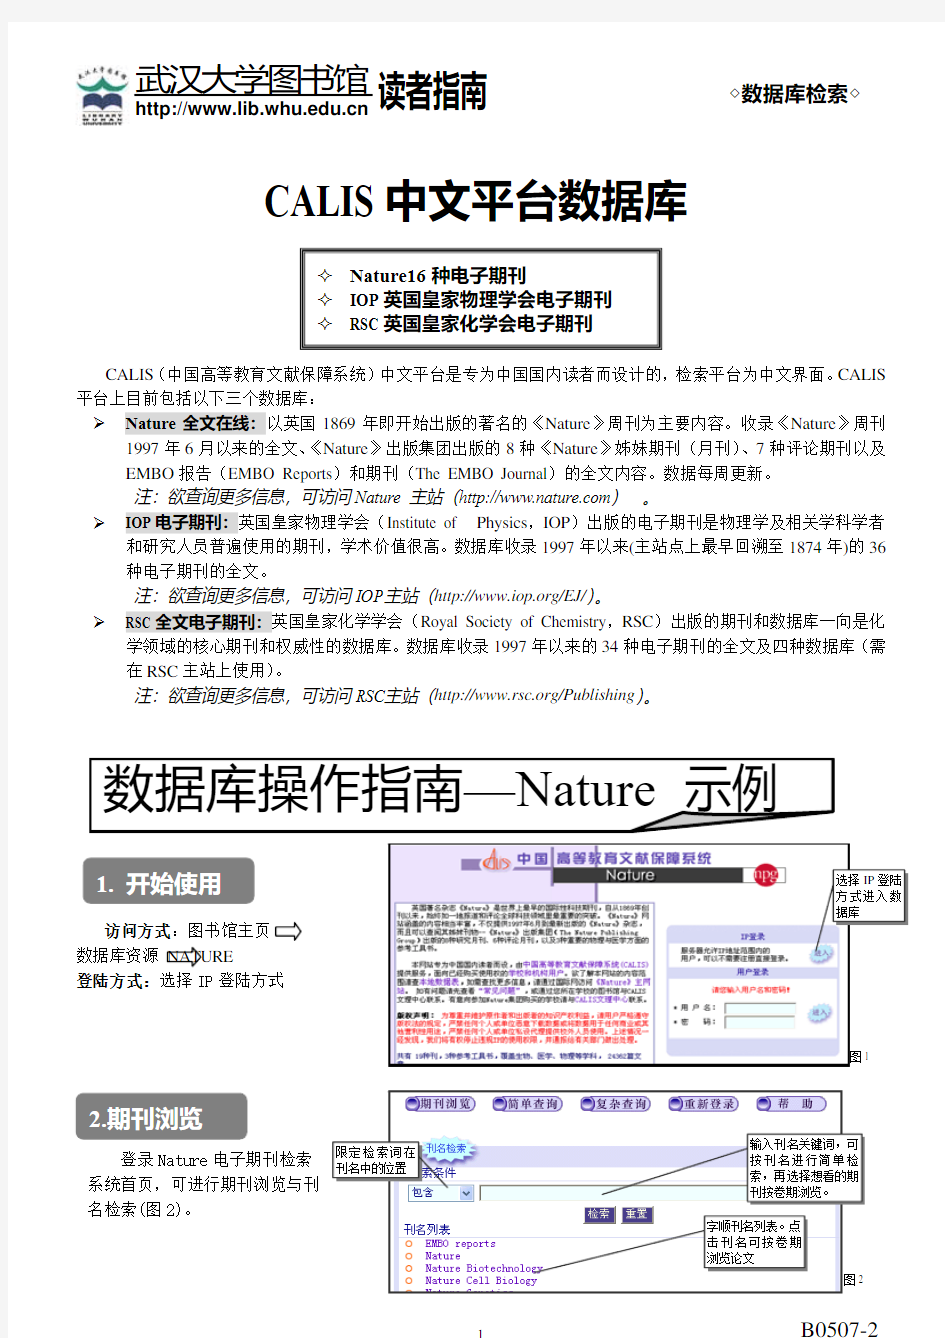 数据库操作指南nature示例 - 武汉大学图书馆